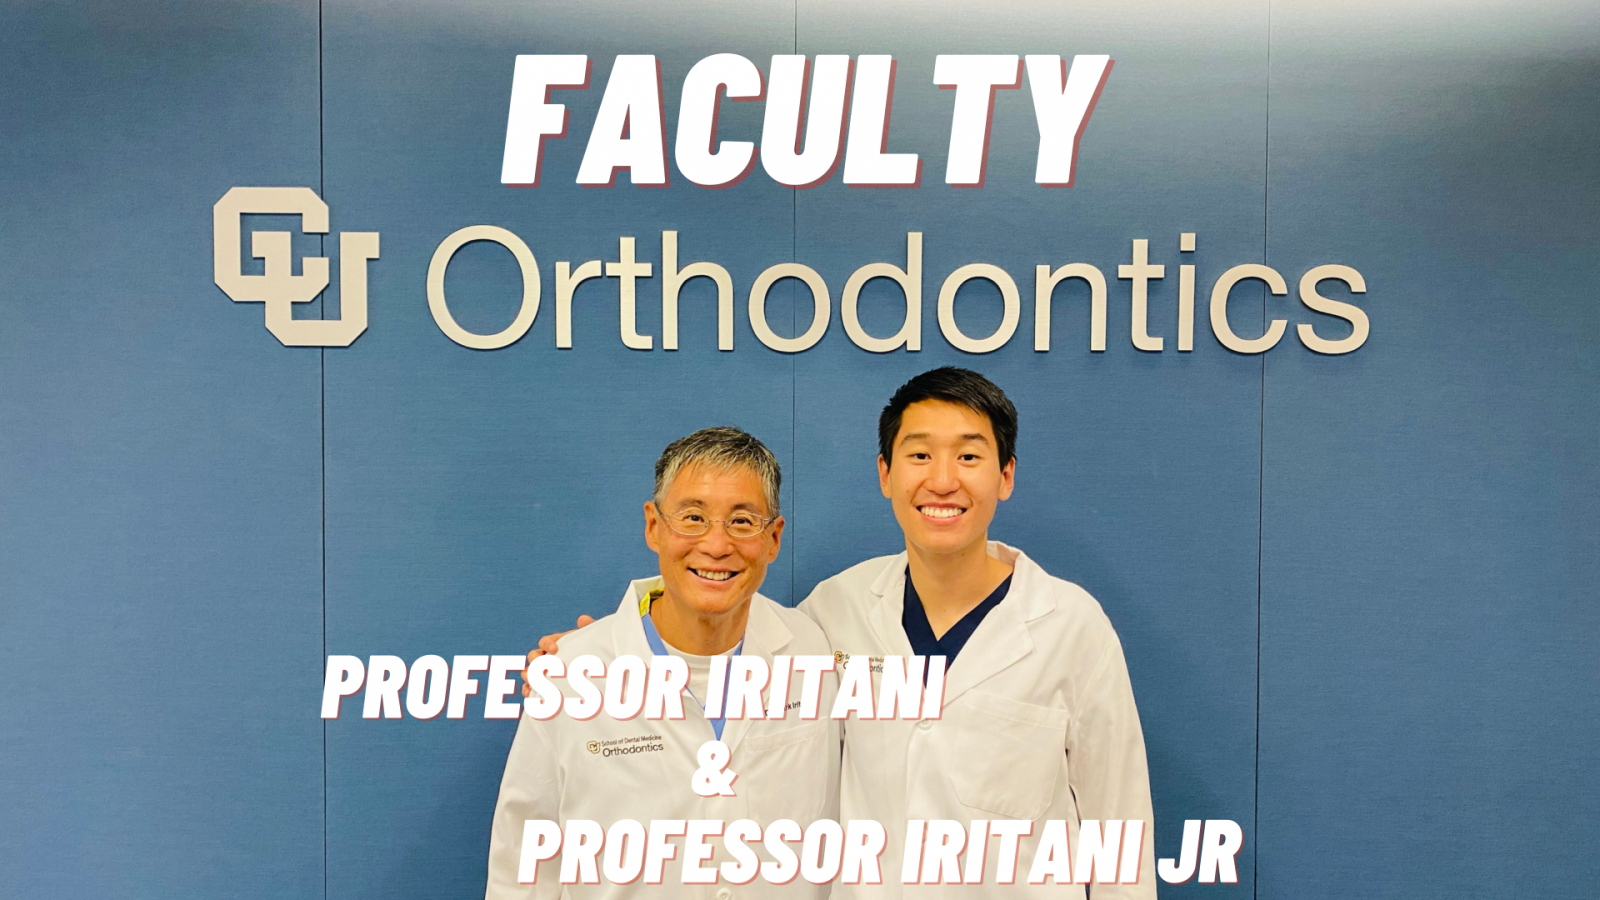 Professors University of Colorado Orthodontics